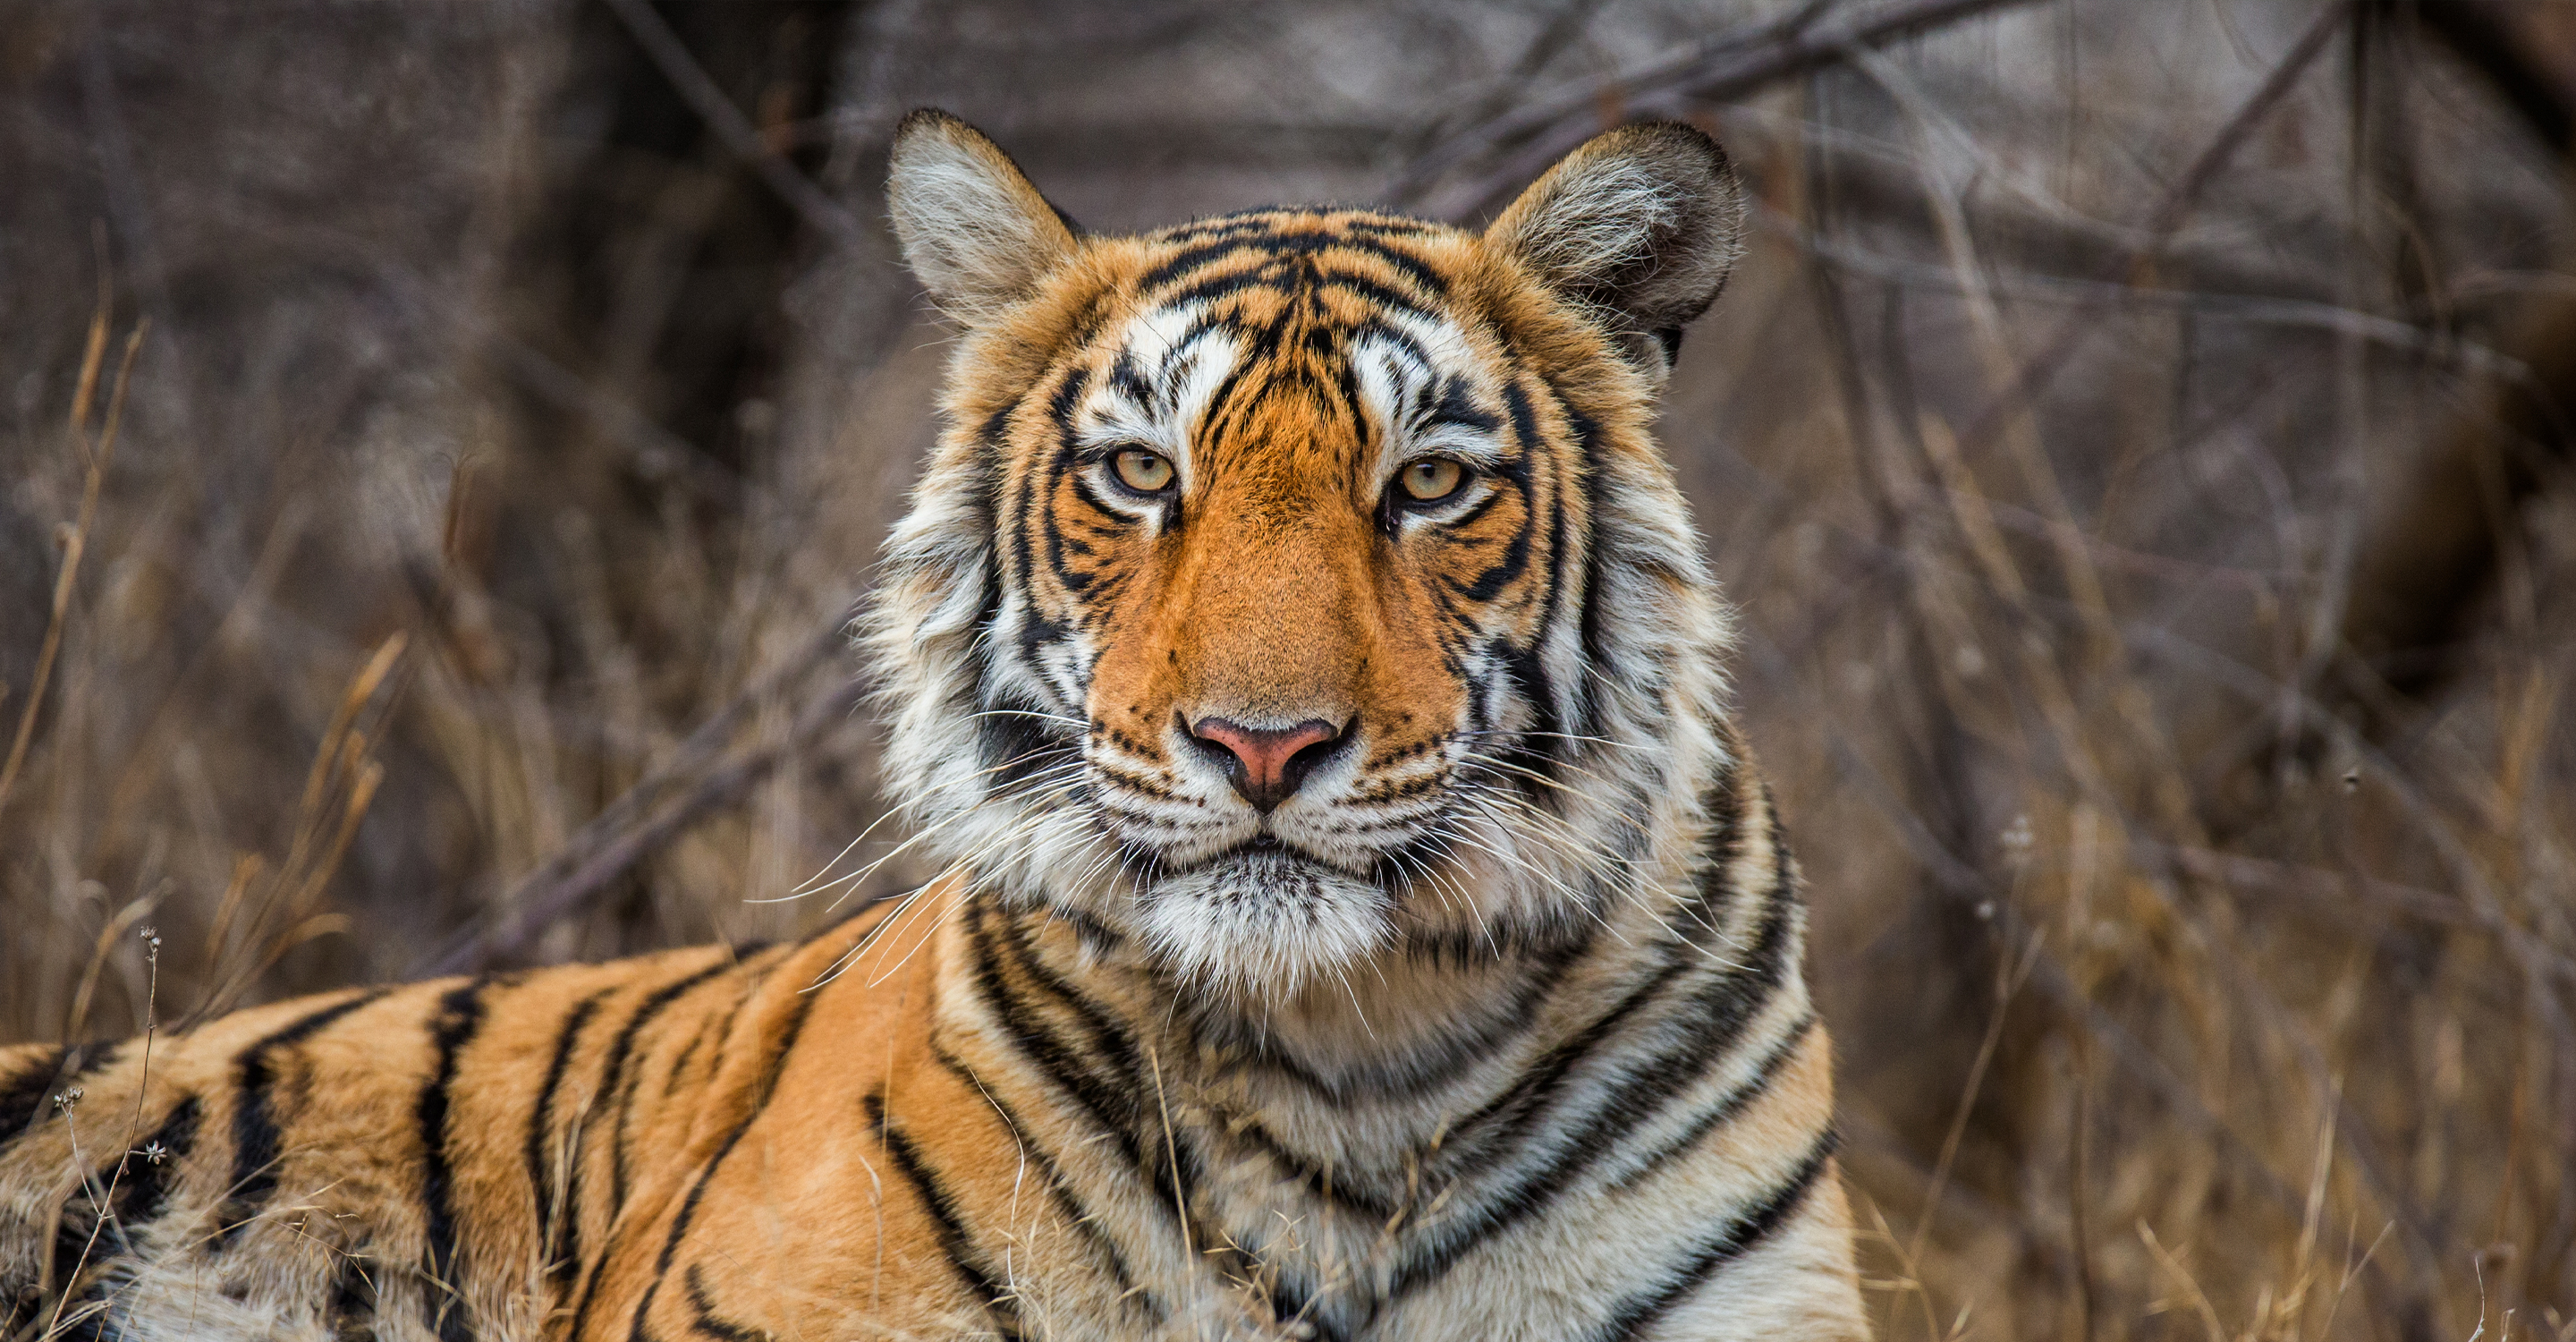 India Tiger Quest